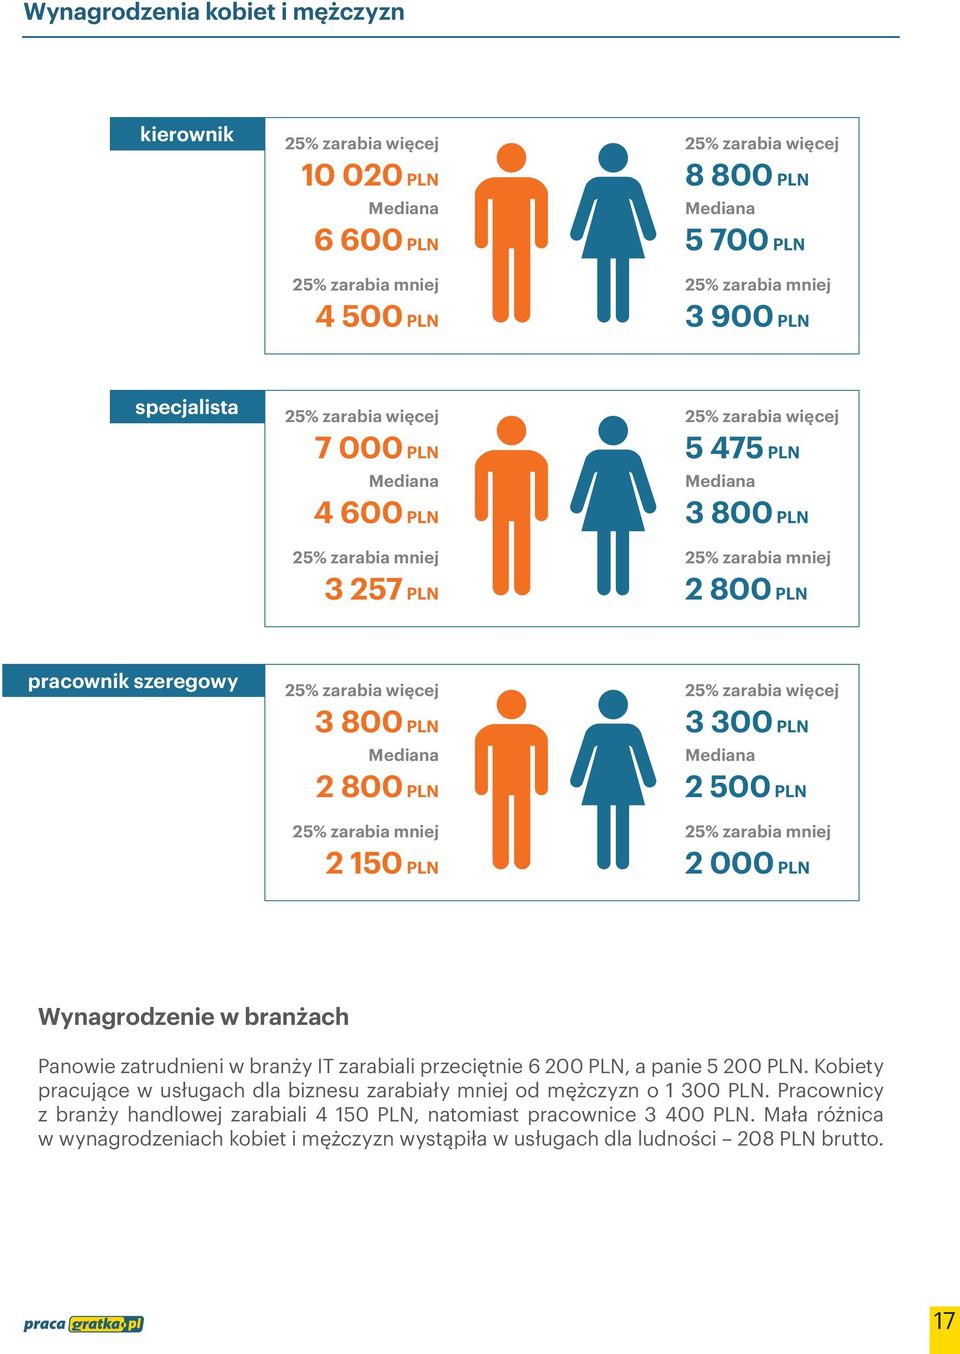 zarabiali przeciętnie 6 200 PLN, a panie 5 200 PLN. Kobiety pracujące w usługach dla biznesu zarabiały mniej od mężczyzn o 1 300 PLN.